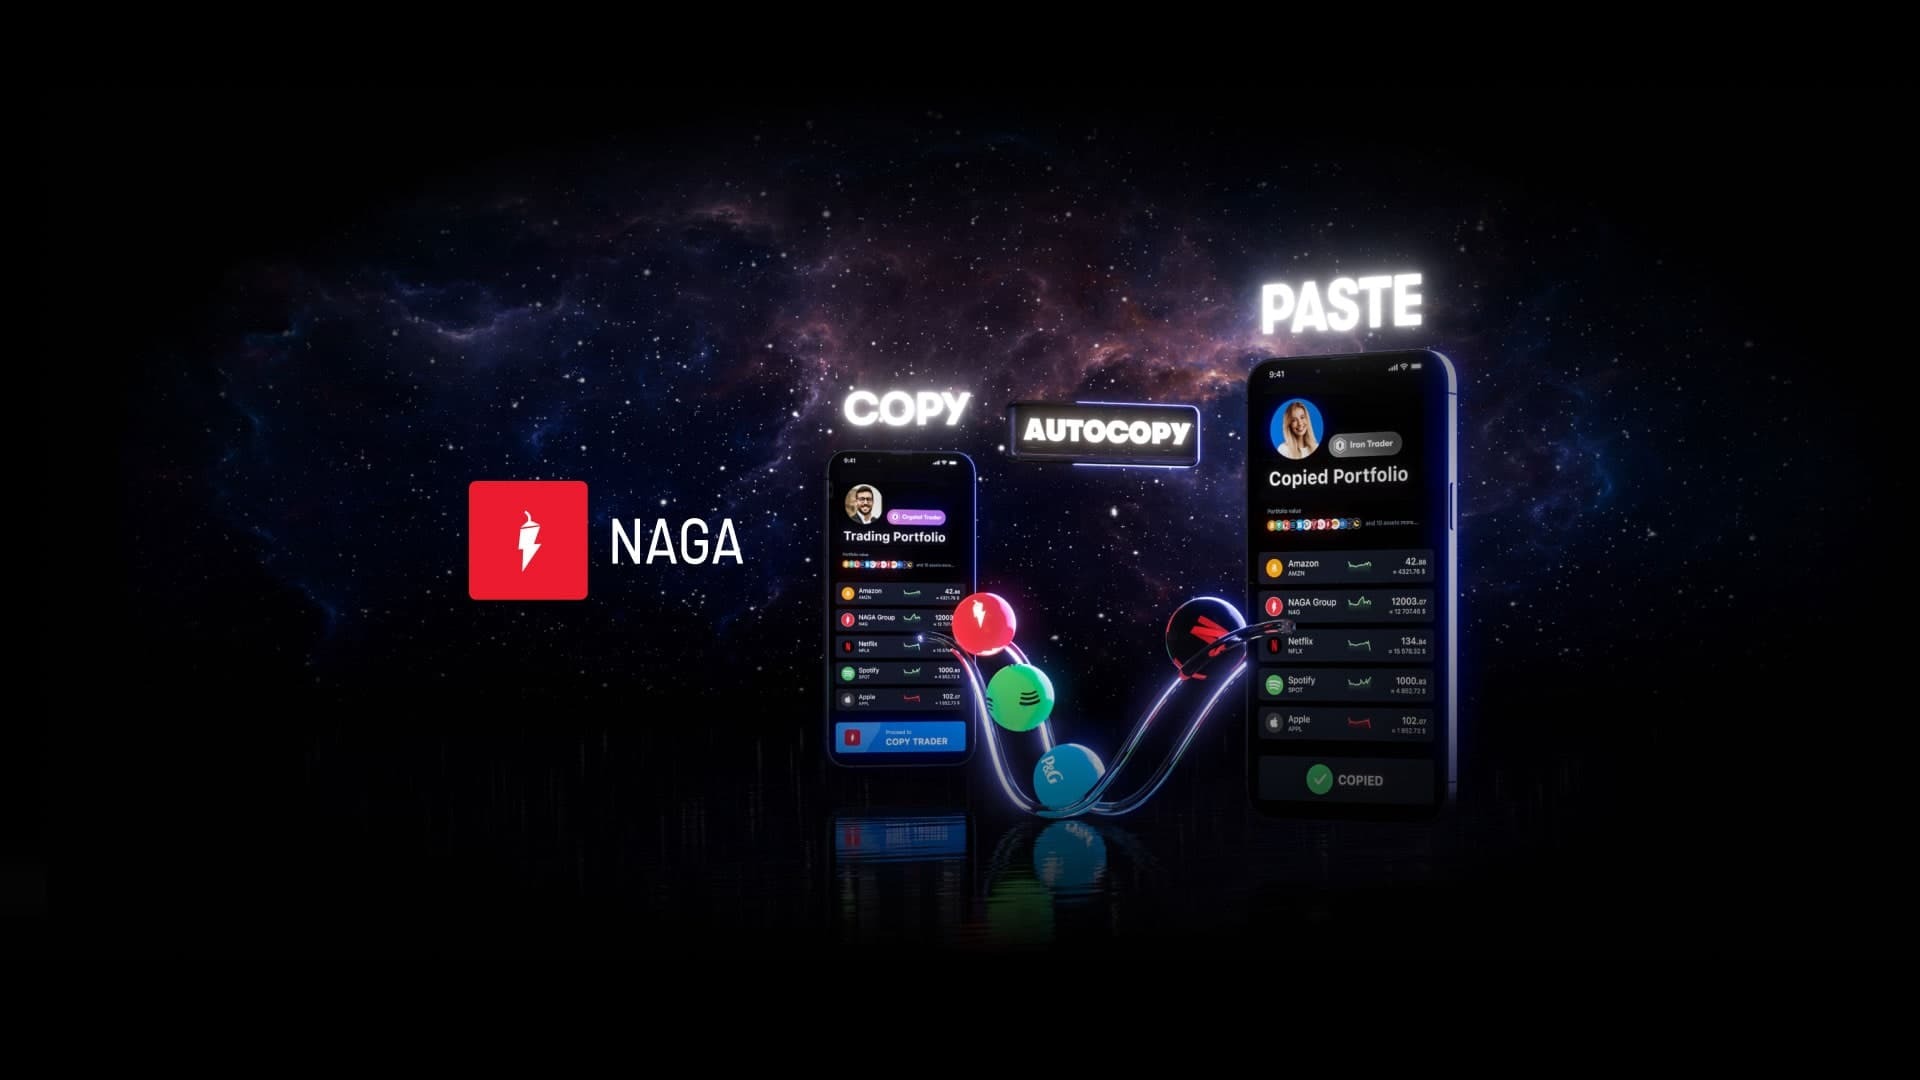 naga.com